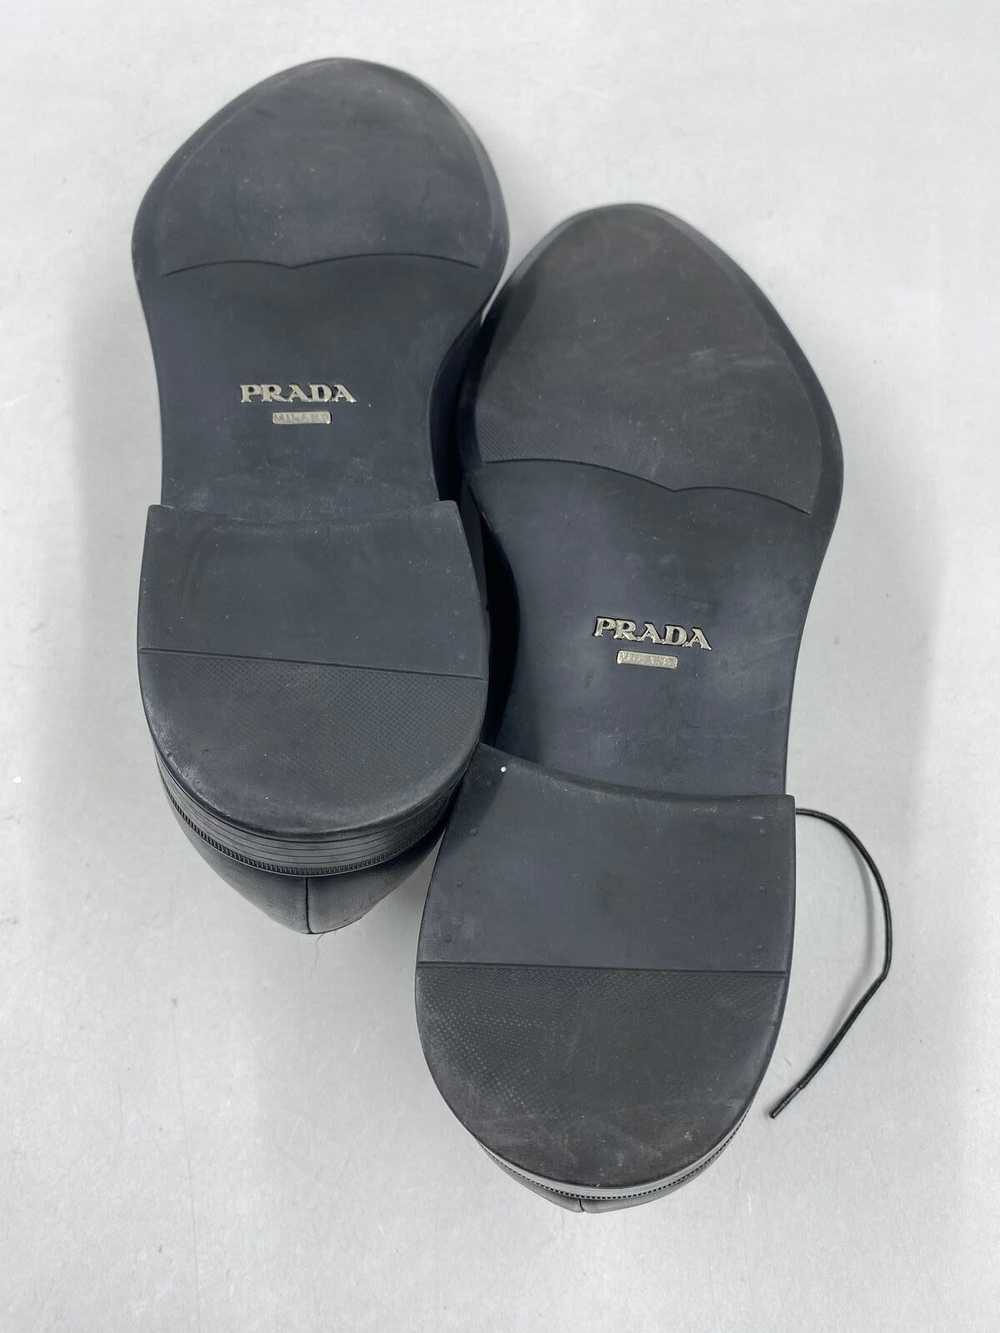 Prada Black Loafer Dress Shoe Men 8 - image 7